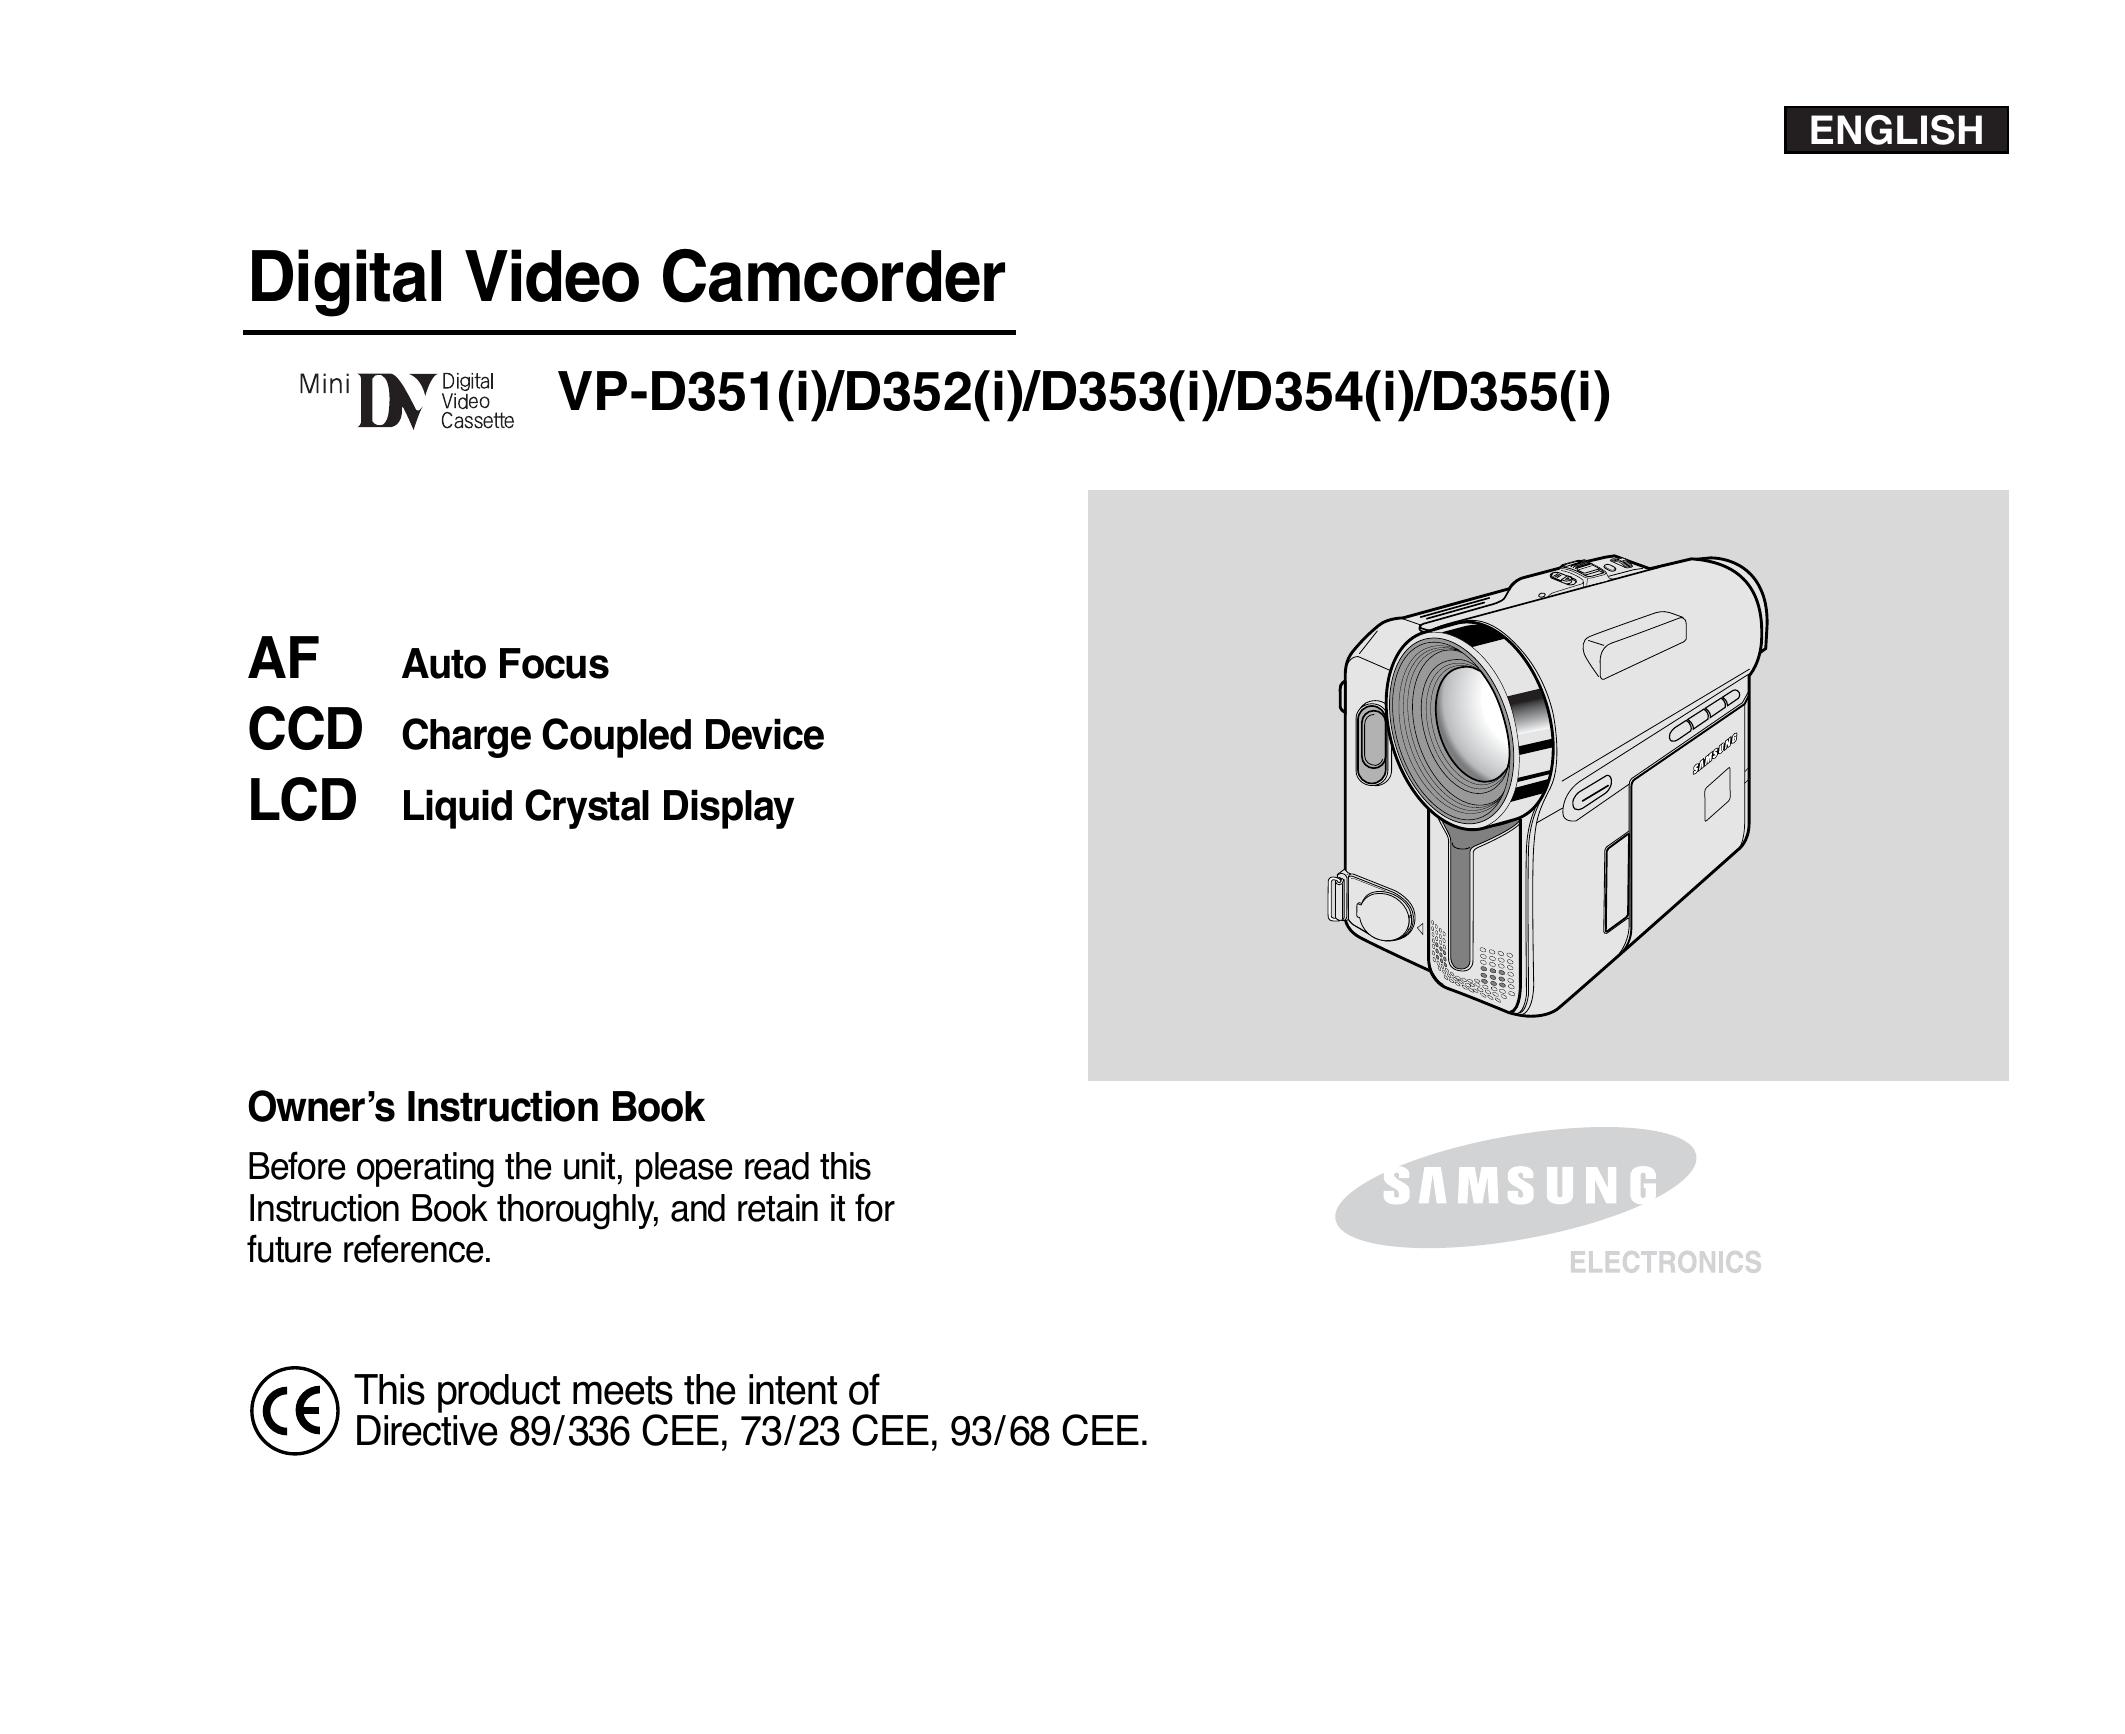 Samsung D354(i) Camcorder User Manual